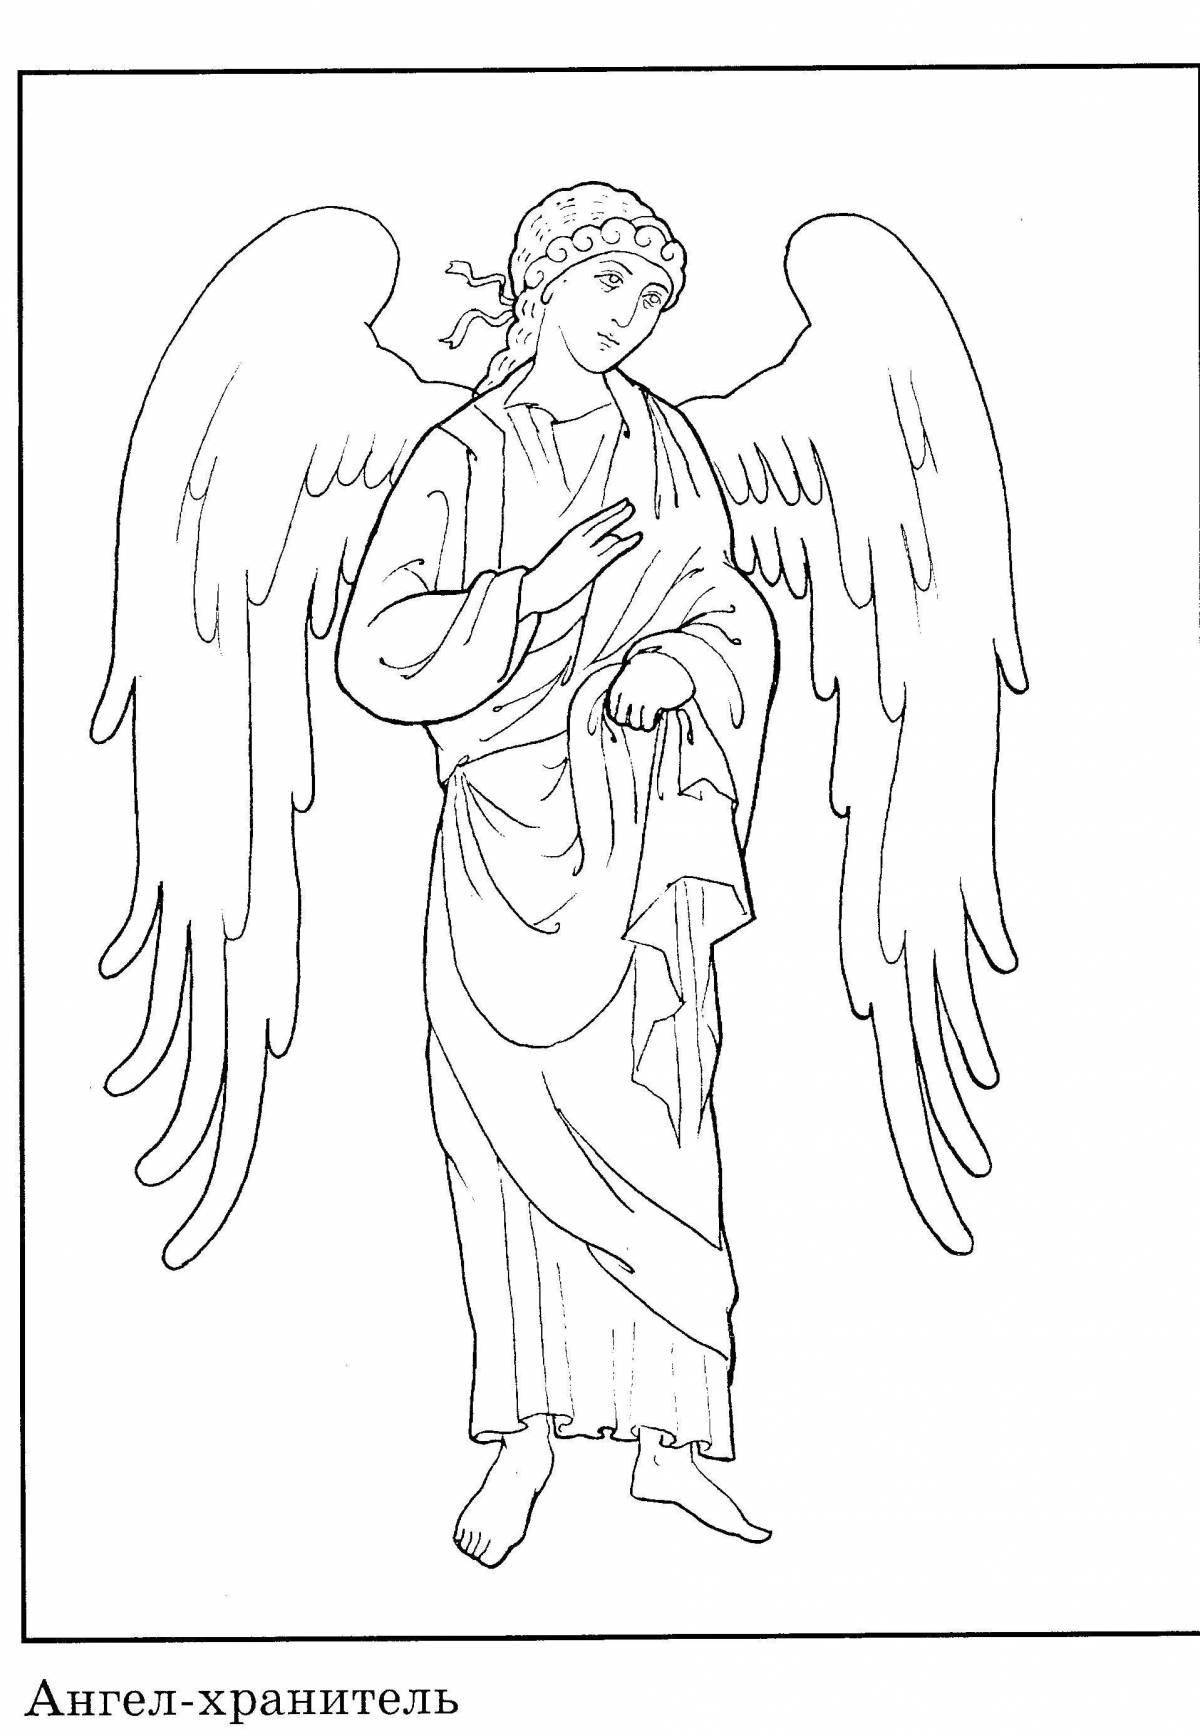 Generous guardian angel coloring book